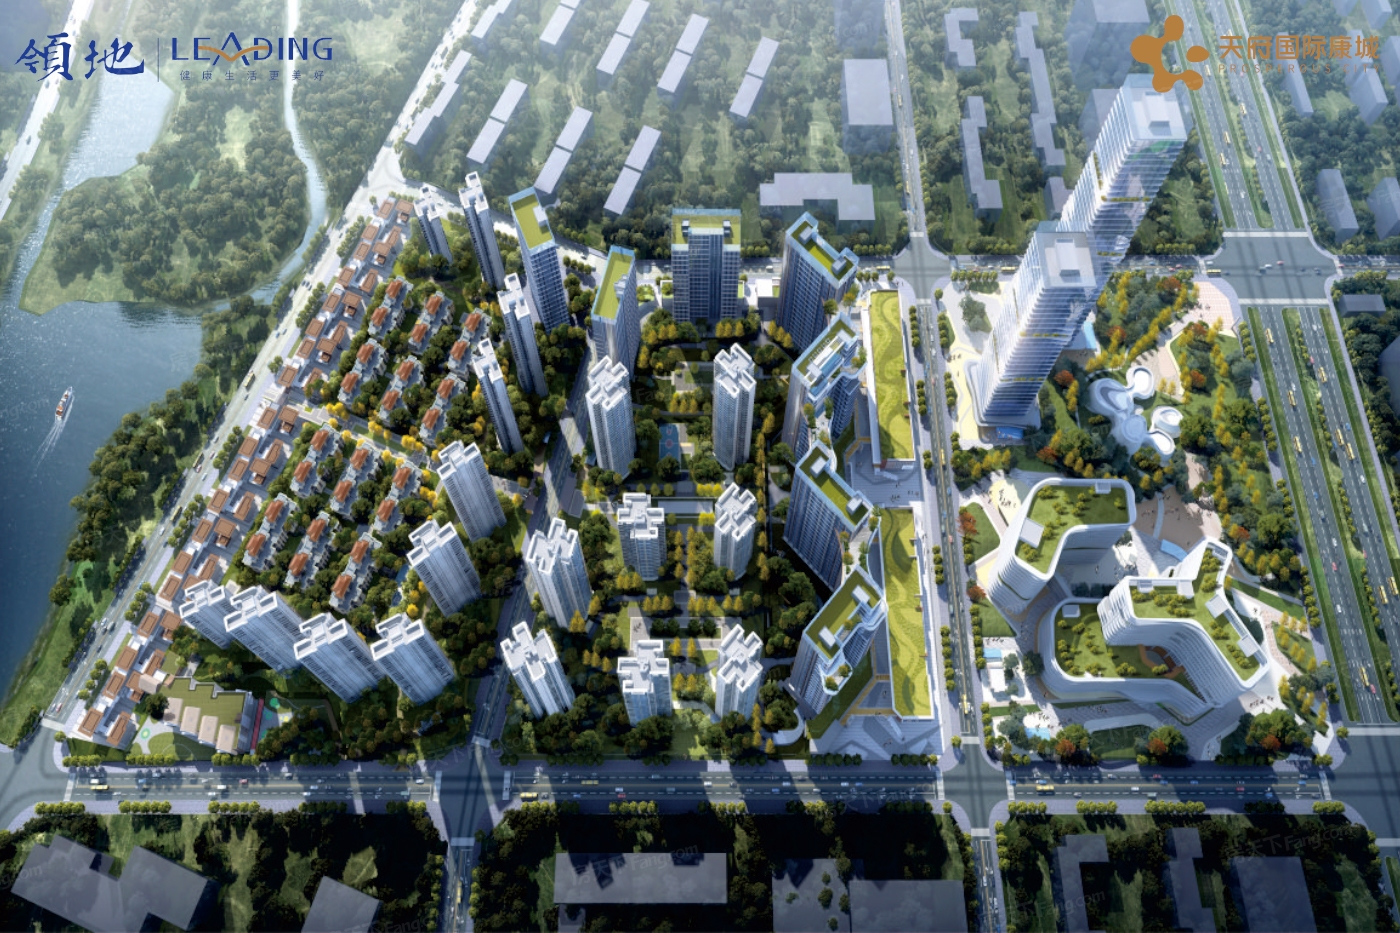 2014年，天府新区被正式设立为新区，由成都和眉山一同打造。在成都都市圈的规划下，从政务服务多